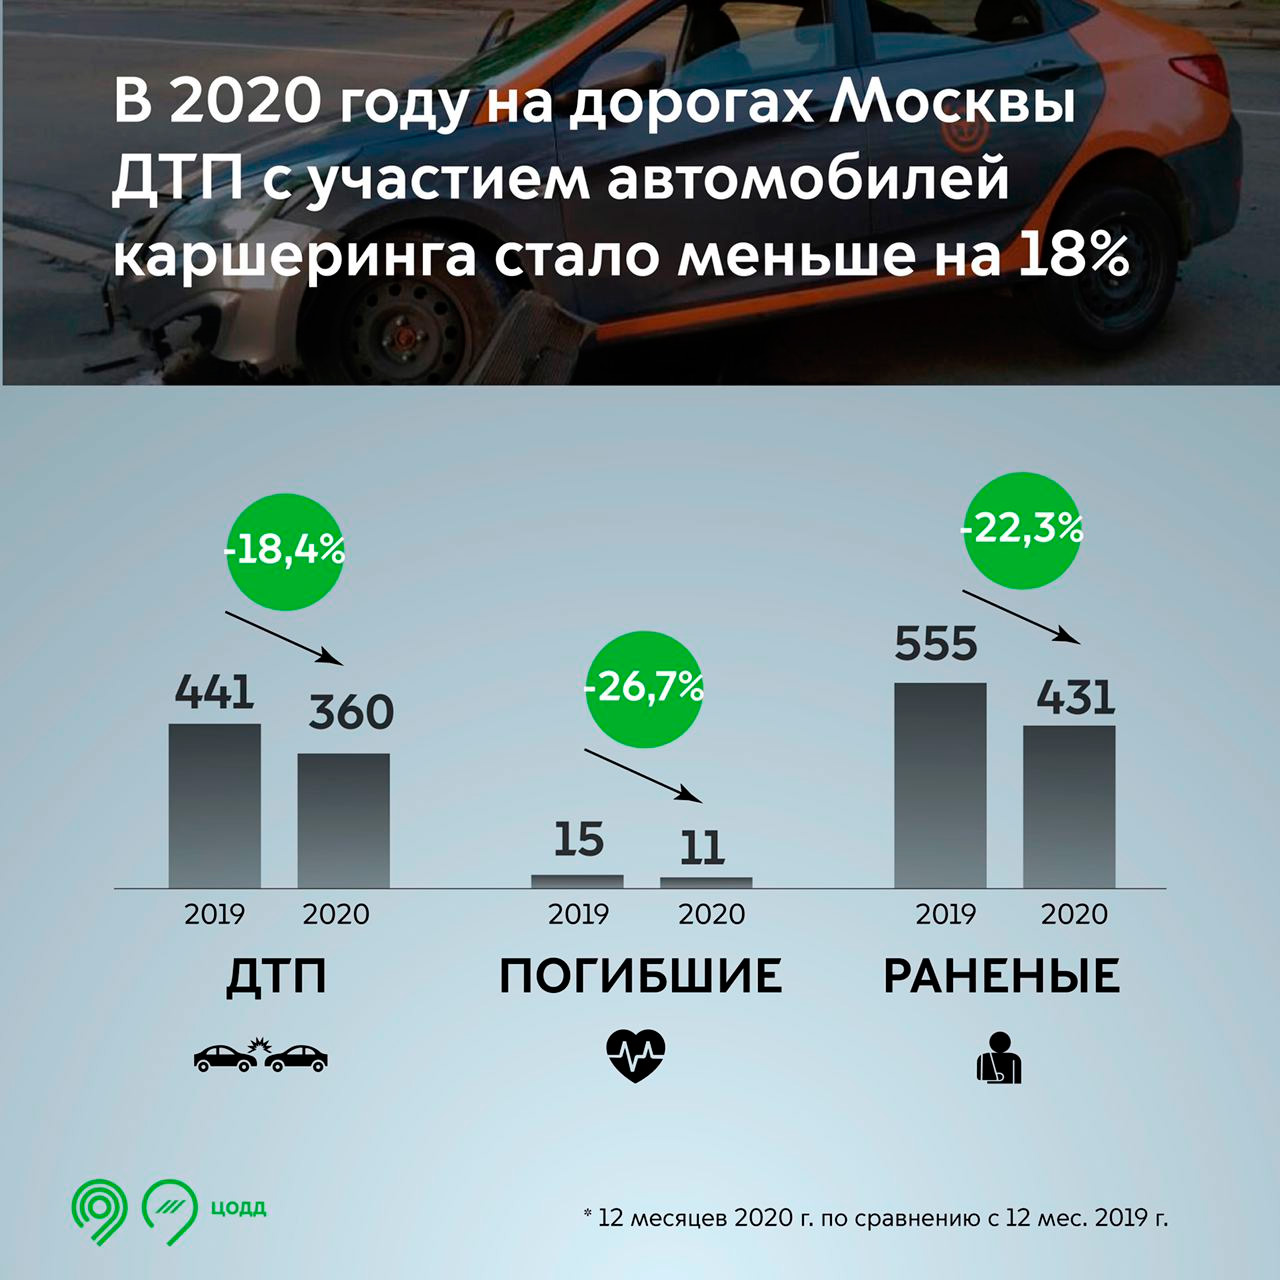 Власти Москвы посчитали ДТП с участием такси и каршеринга в 2020 году